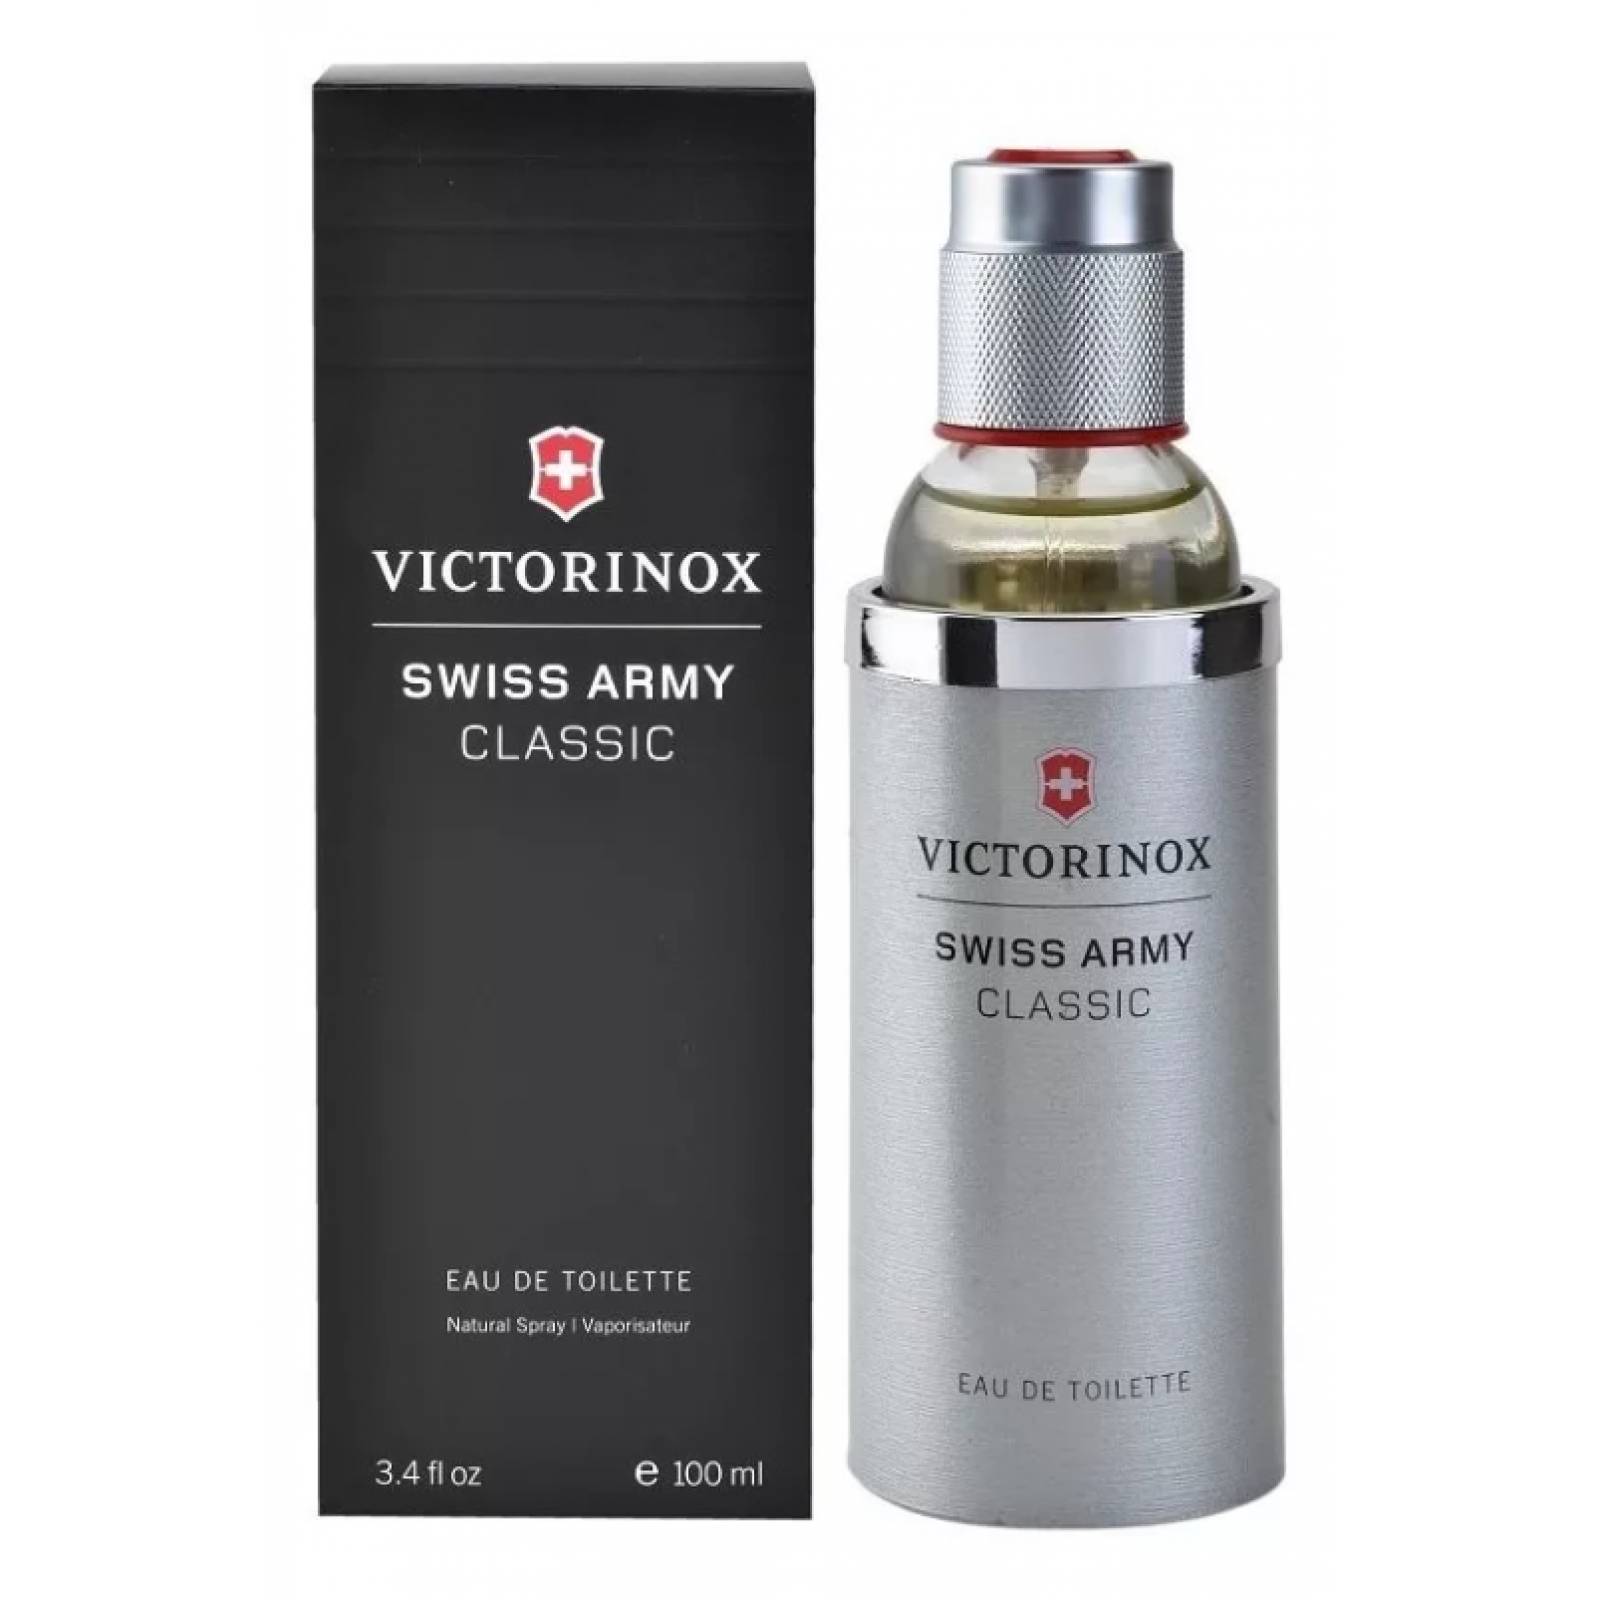 Swiss Army Classic De Victorinox Eau De Toilette 100 ml